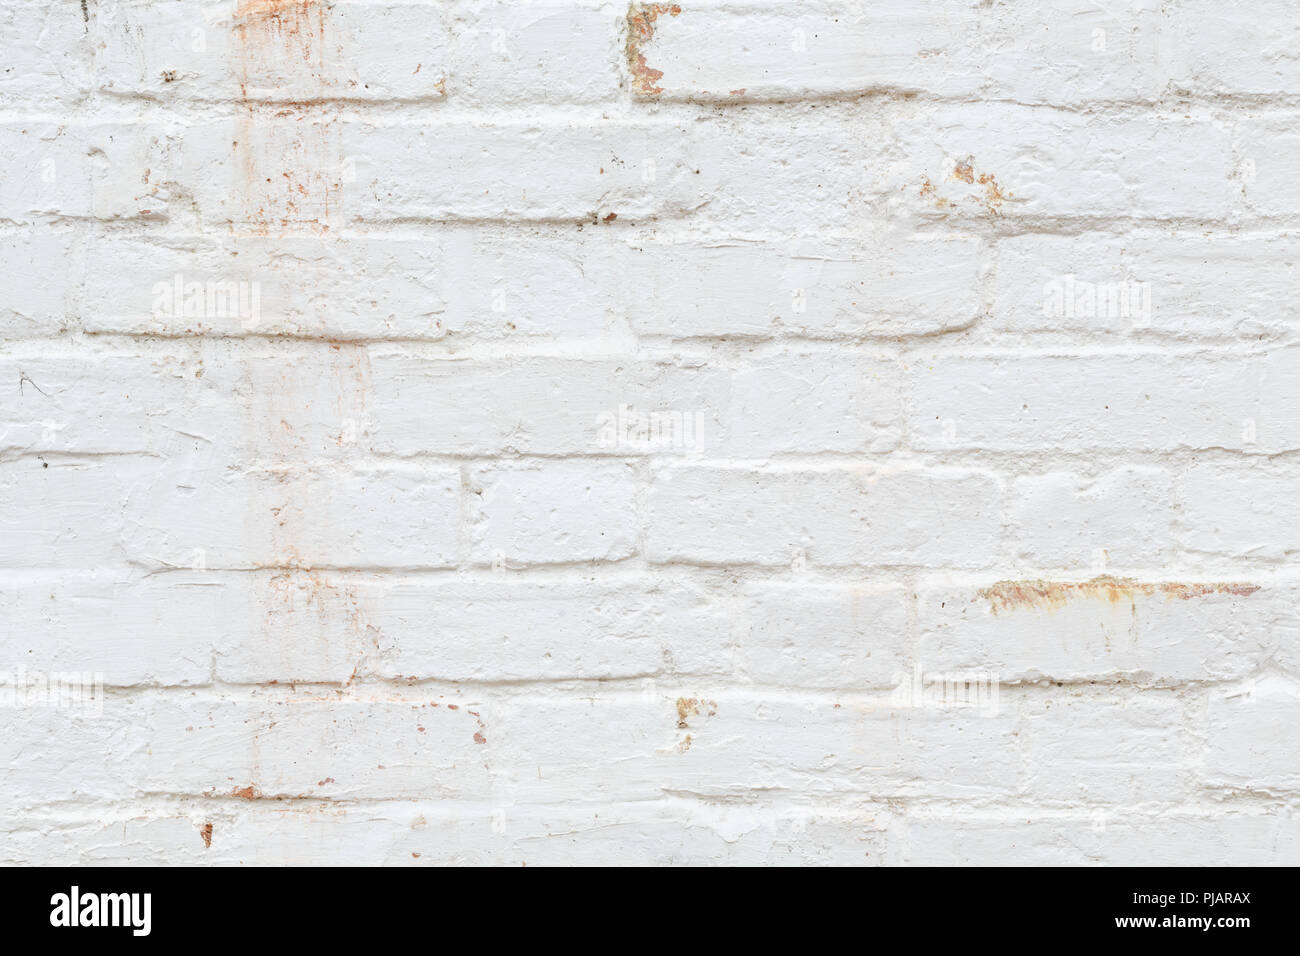 Vista dettagliata del vecchio muro di mattoni dipinto di bianco e addolorato, peeling e colorate. Ideale per gruppi grunge texture di sfondo Foto Stock